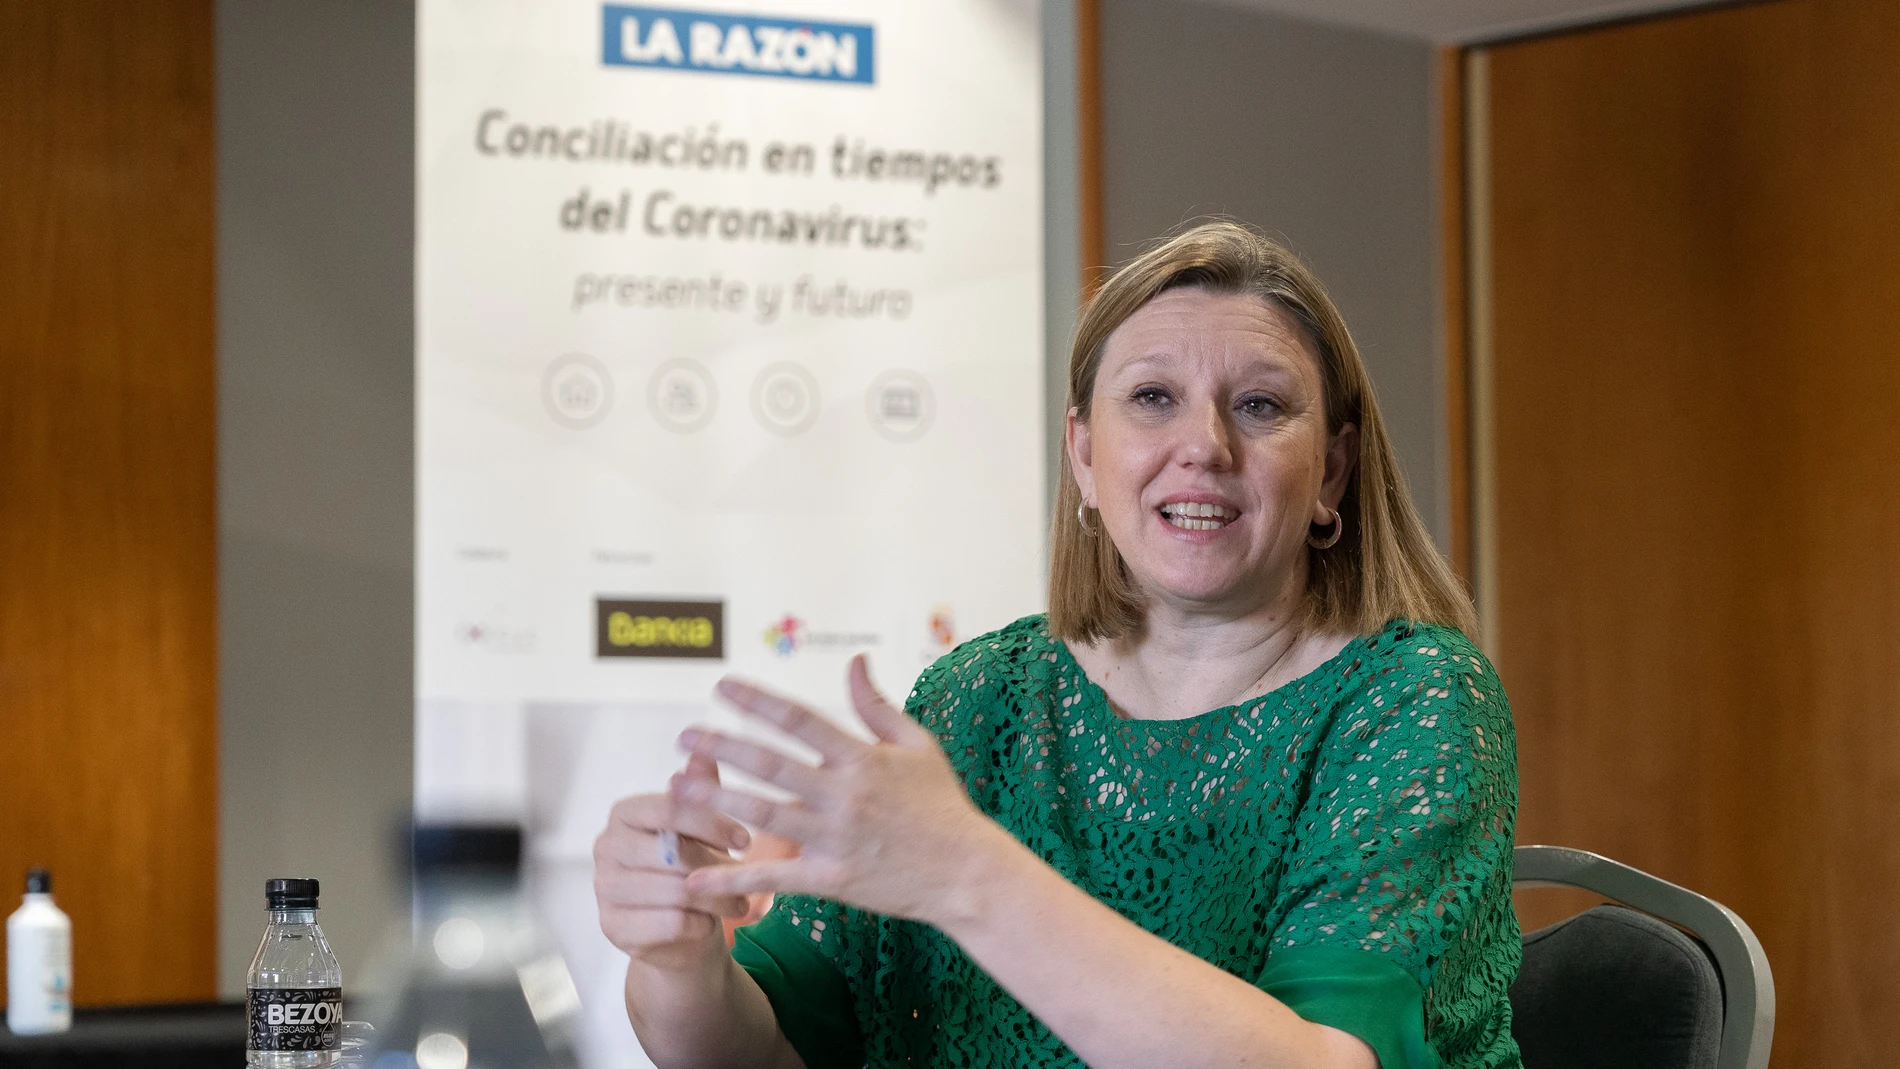 La consejera Isabel Blanco durante la Jornada "Conciliación en tiempos del Coronavirus: presente y futuro", organizada por La Razón en CyL.